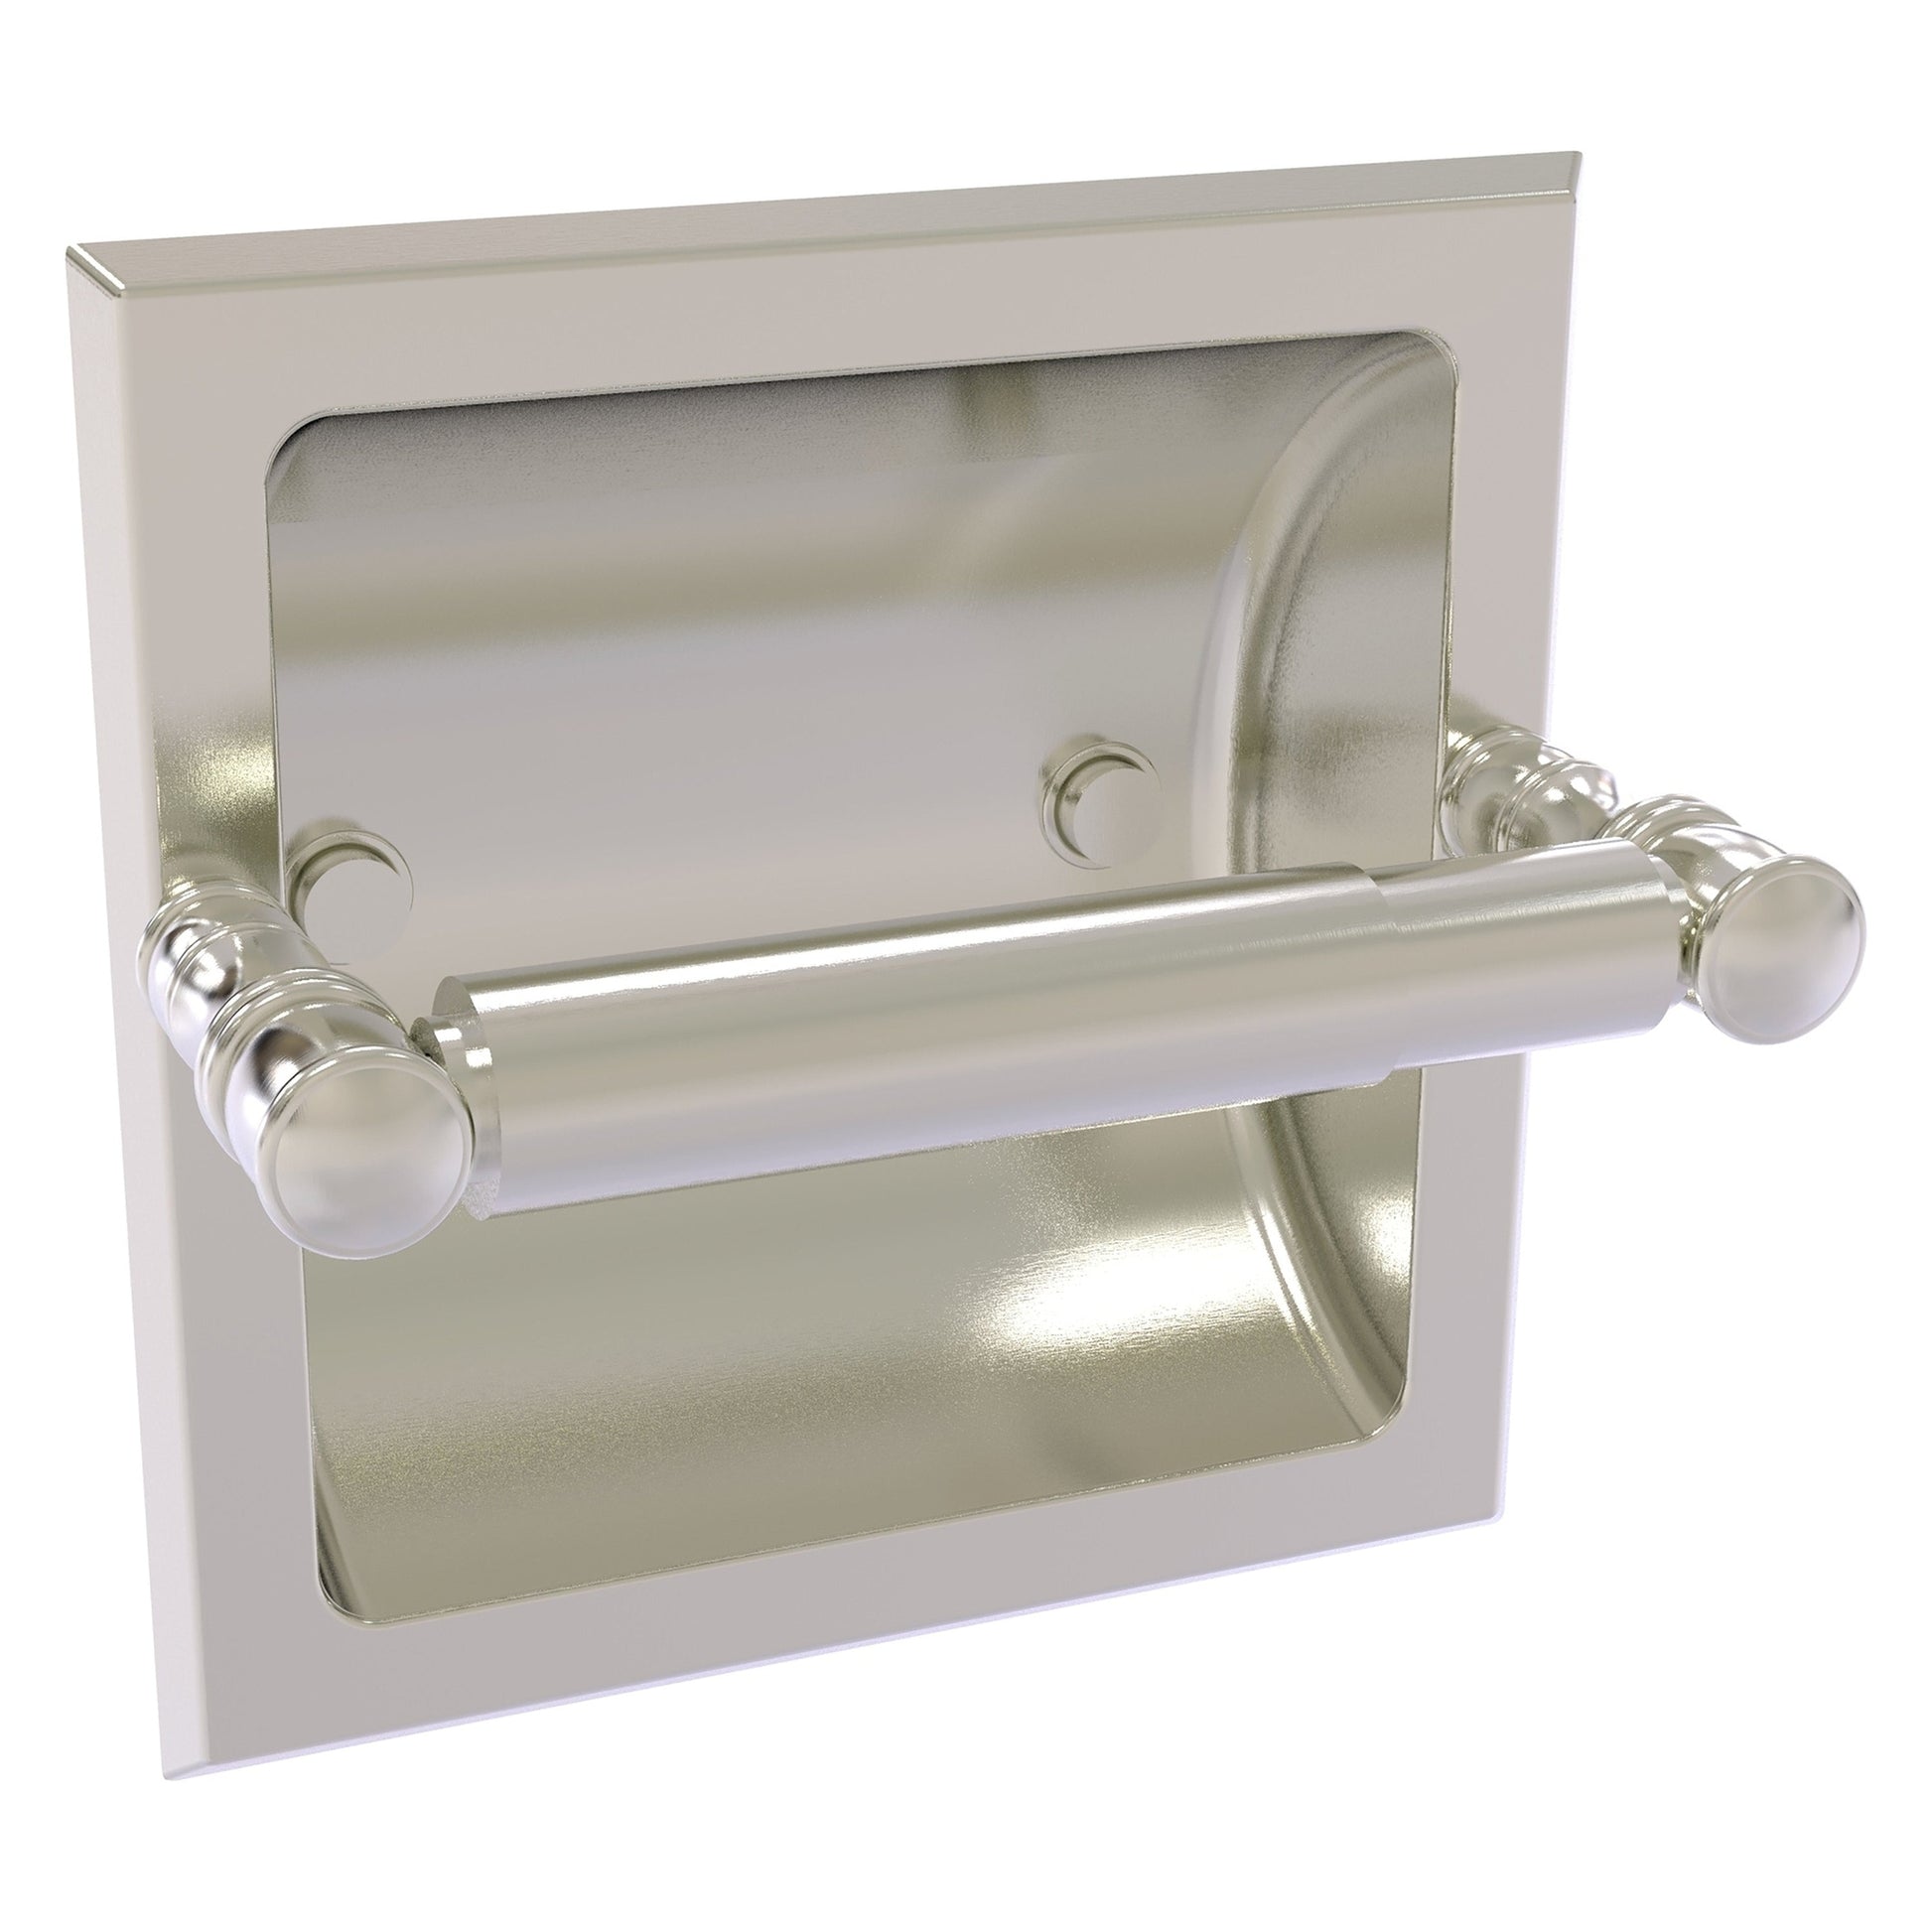 https://usbathstore.com/cdn/shop/files/Allied-Brass-Carolina-6_125-x-4-Satin-Nickel-Solid-Brass-Recessed-Toilet-Paper-Holder.jpg?v=1693602371&width=1946